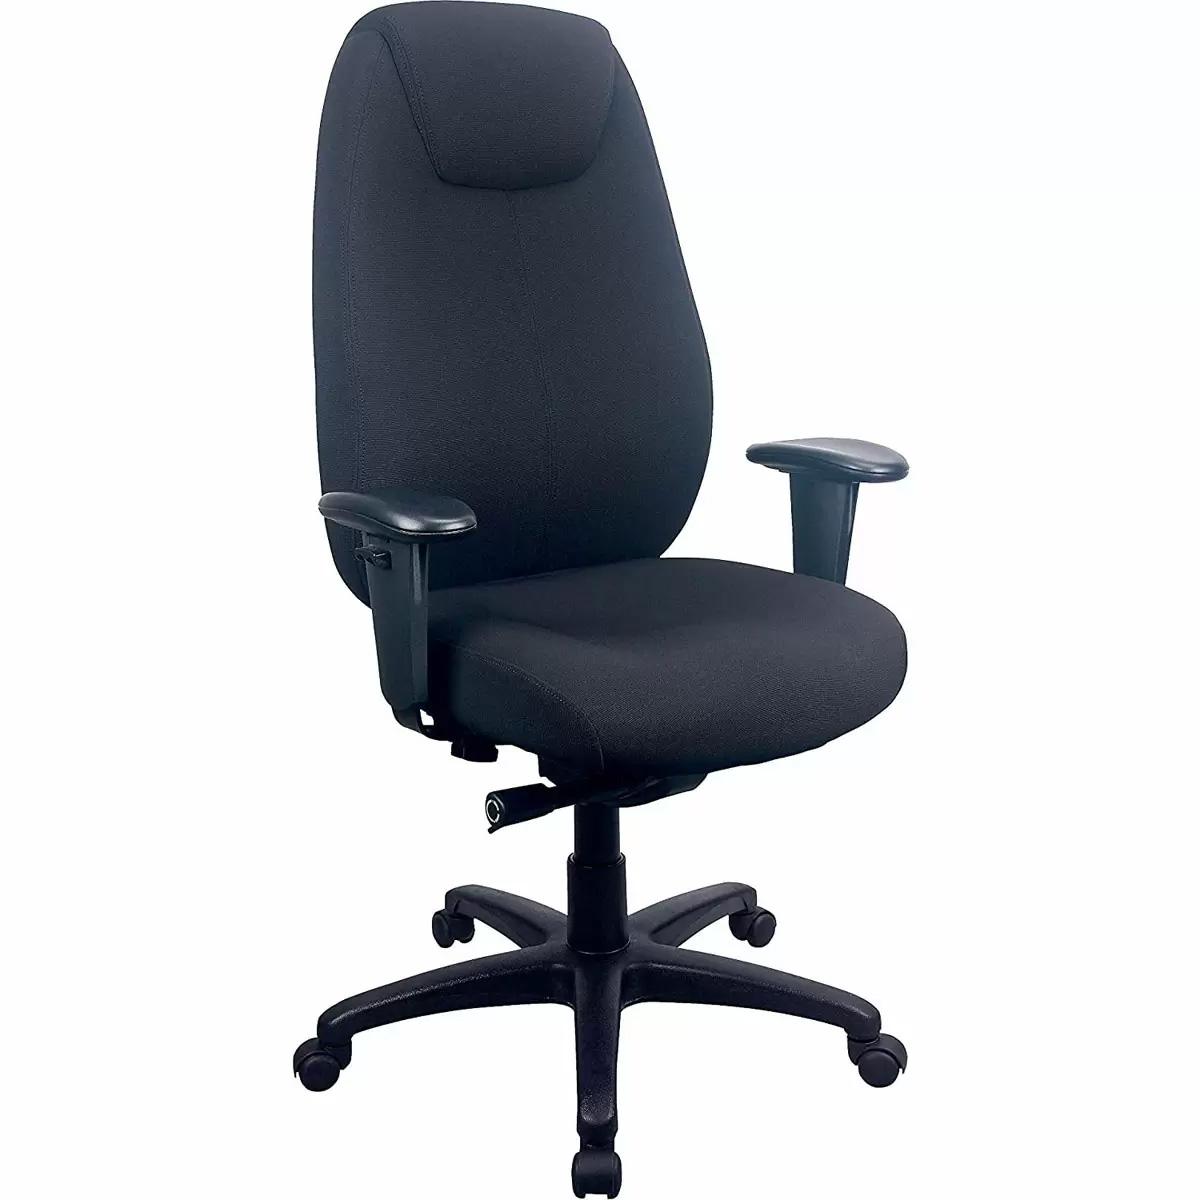 Tempur-Pedic 6400 Fabric Desk Chair for $199.99 Shipped